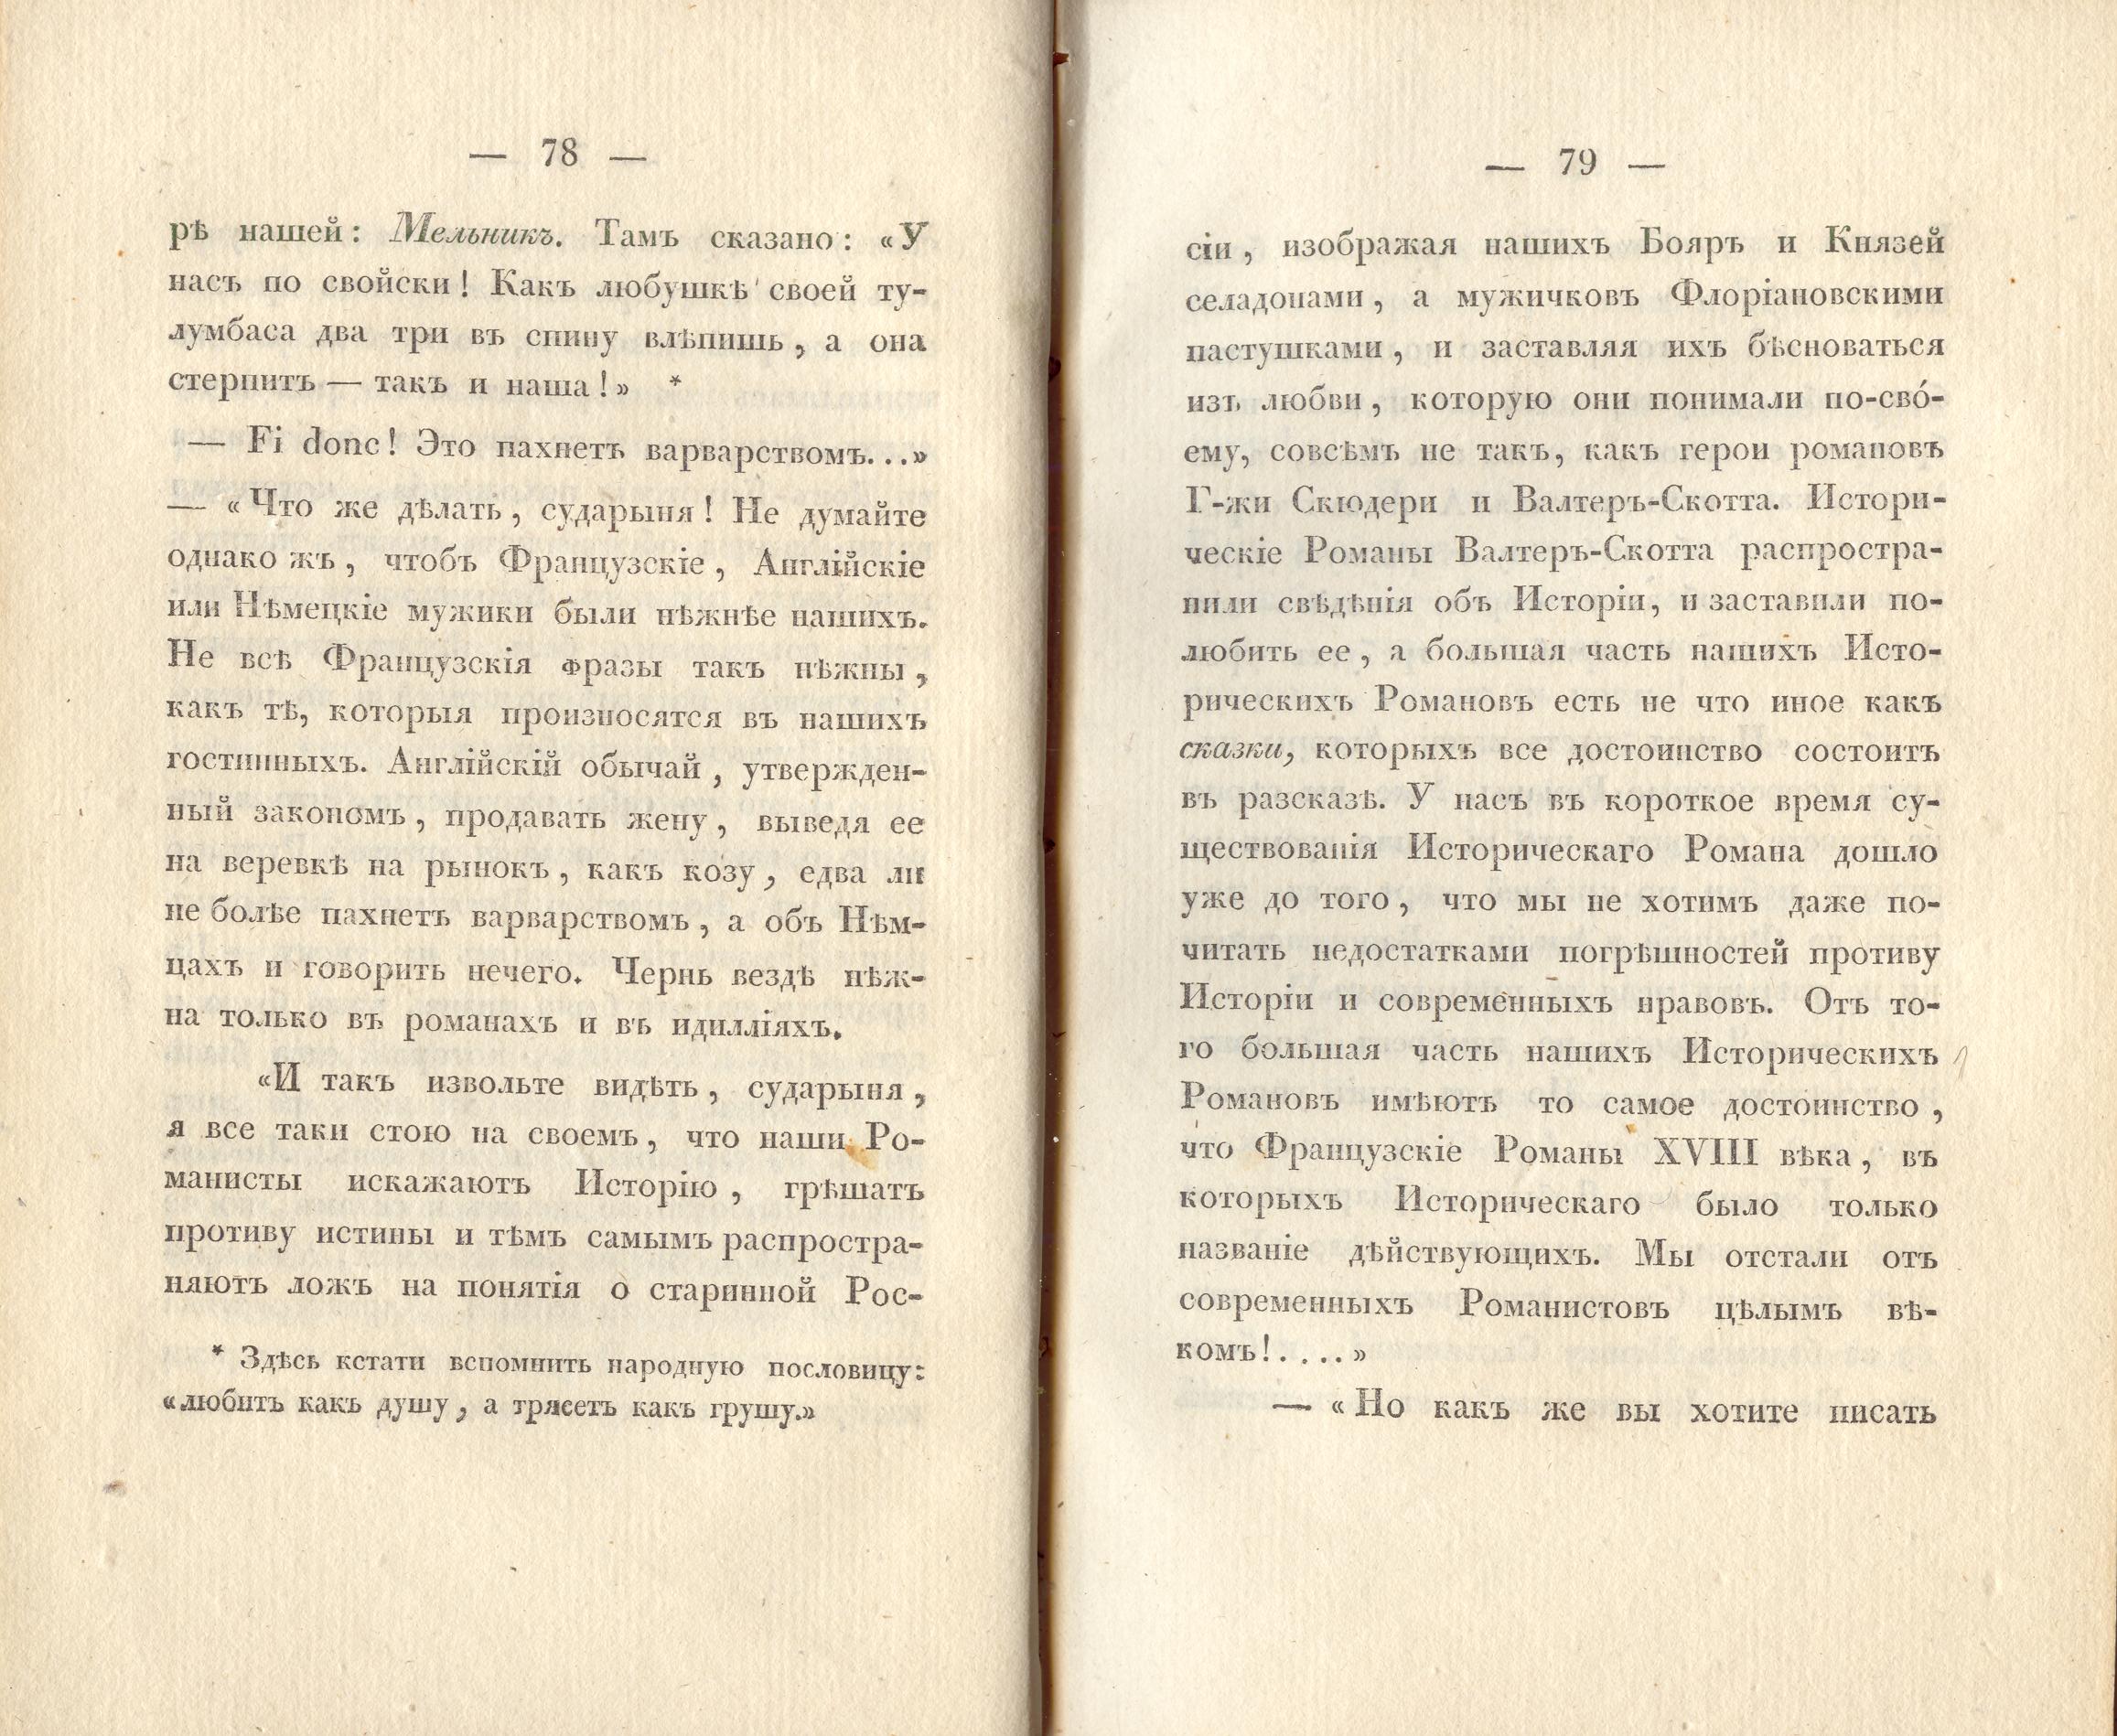 Сочиненія [2] (1836) | 42. (78-79) Main body of text